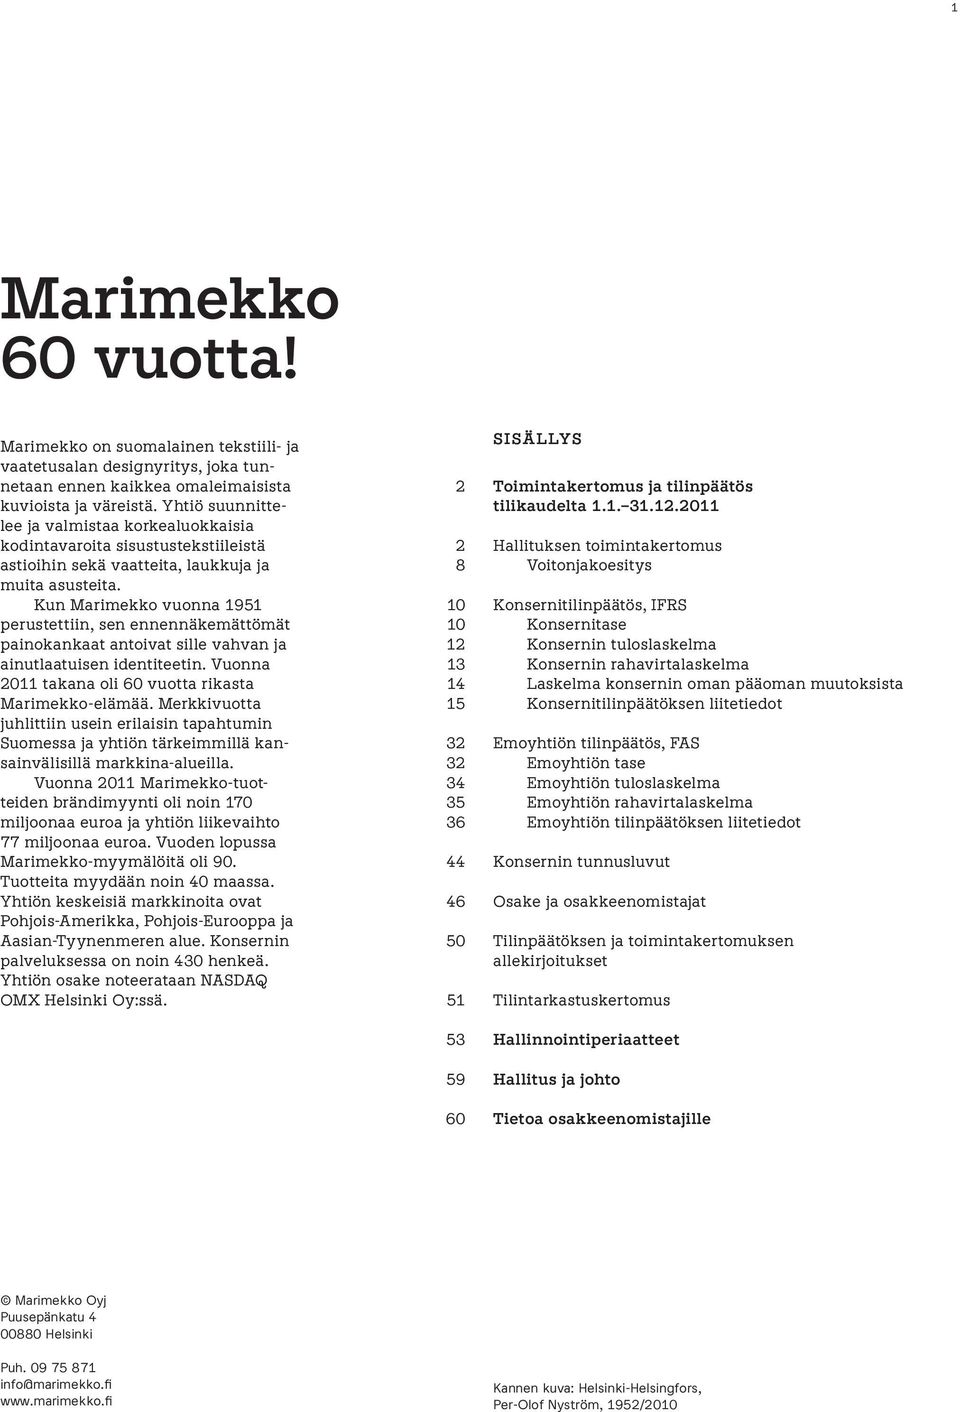 Kun Marimekko vuonna 1951 perustettiin, sen ennennäkemättömät painokankaat antoivat sille vahvan ja ainutlaatuisen identiteetin. Vuonna 2011 takana oli 60 vuotta rikasta Marimekko-elämää.